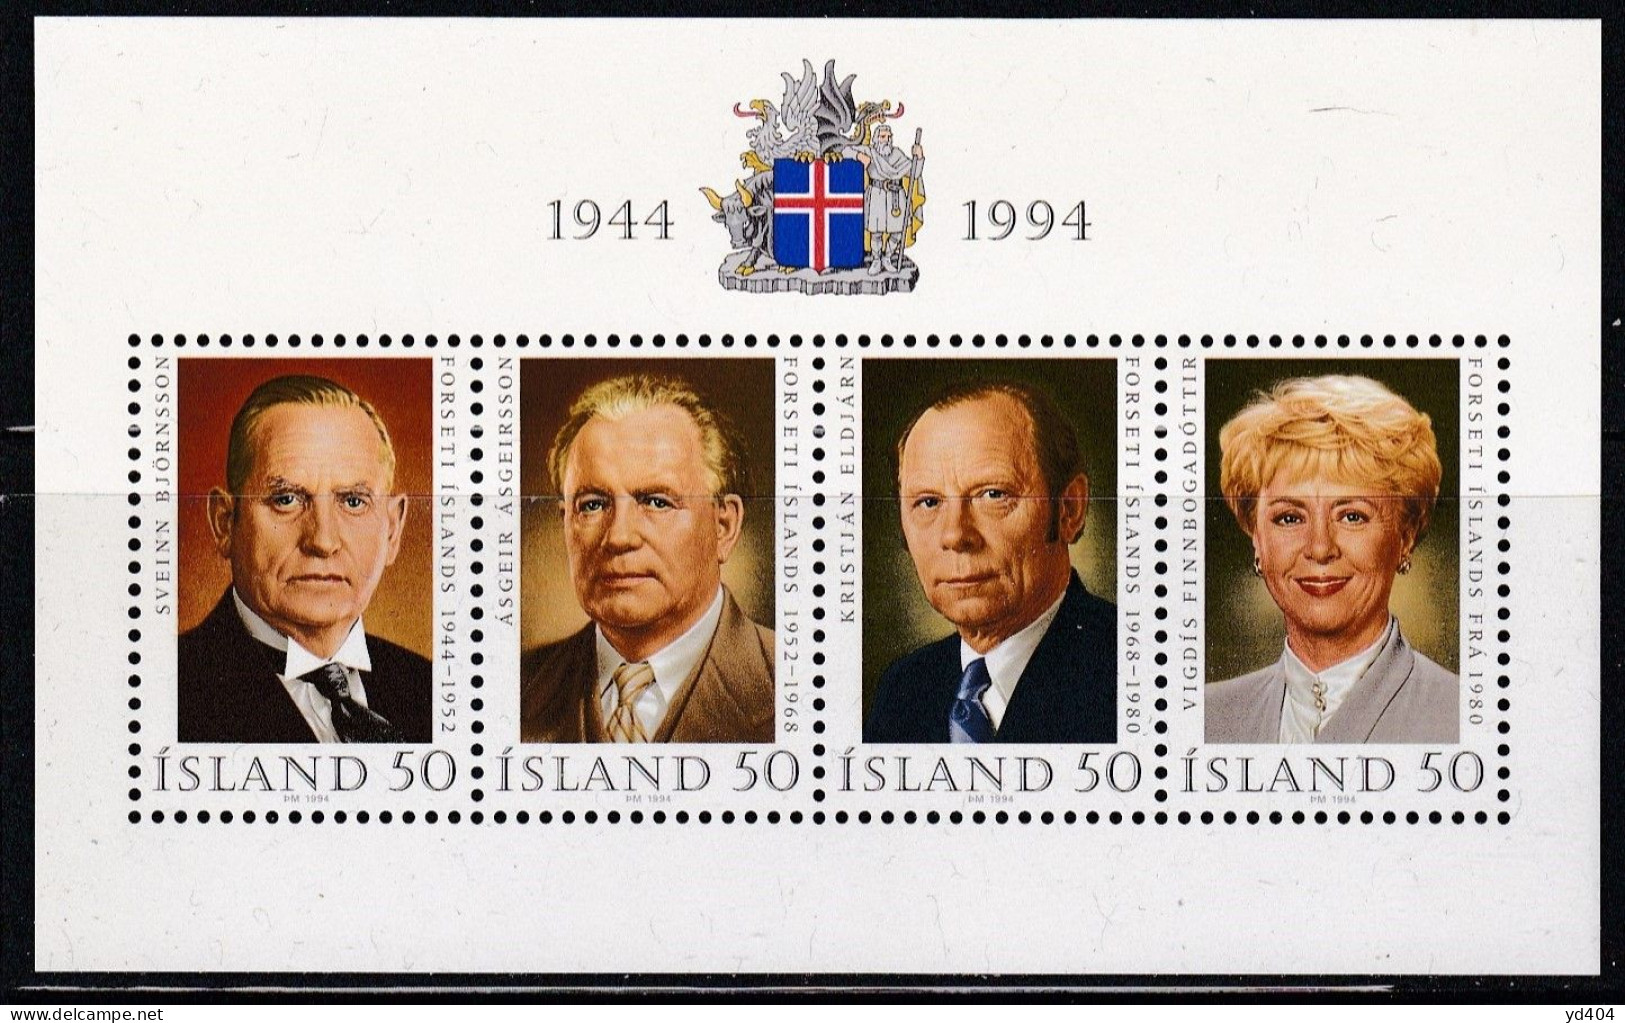 IS484 – ISLANDE – ICELAND – 1994 – 50th ANNIVERSARY OF REPUBLIC – SG # MS 829 MNH 11,50 € - Blocchi & Foglietti